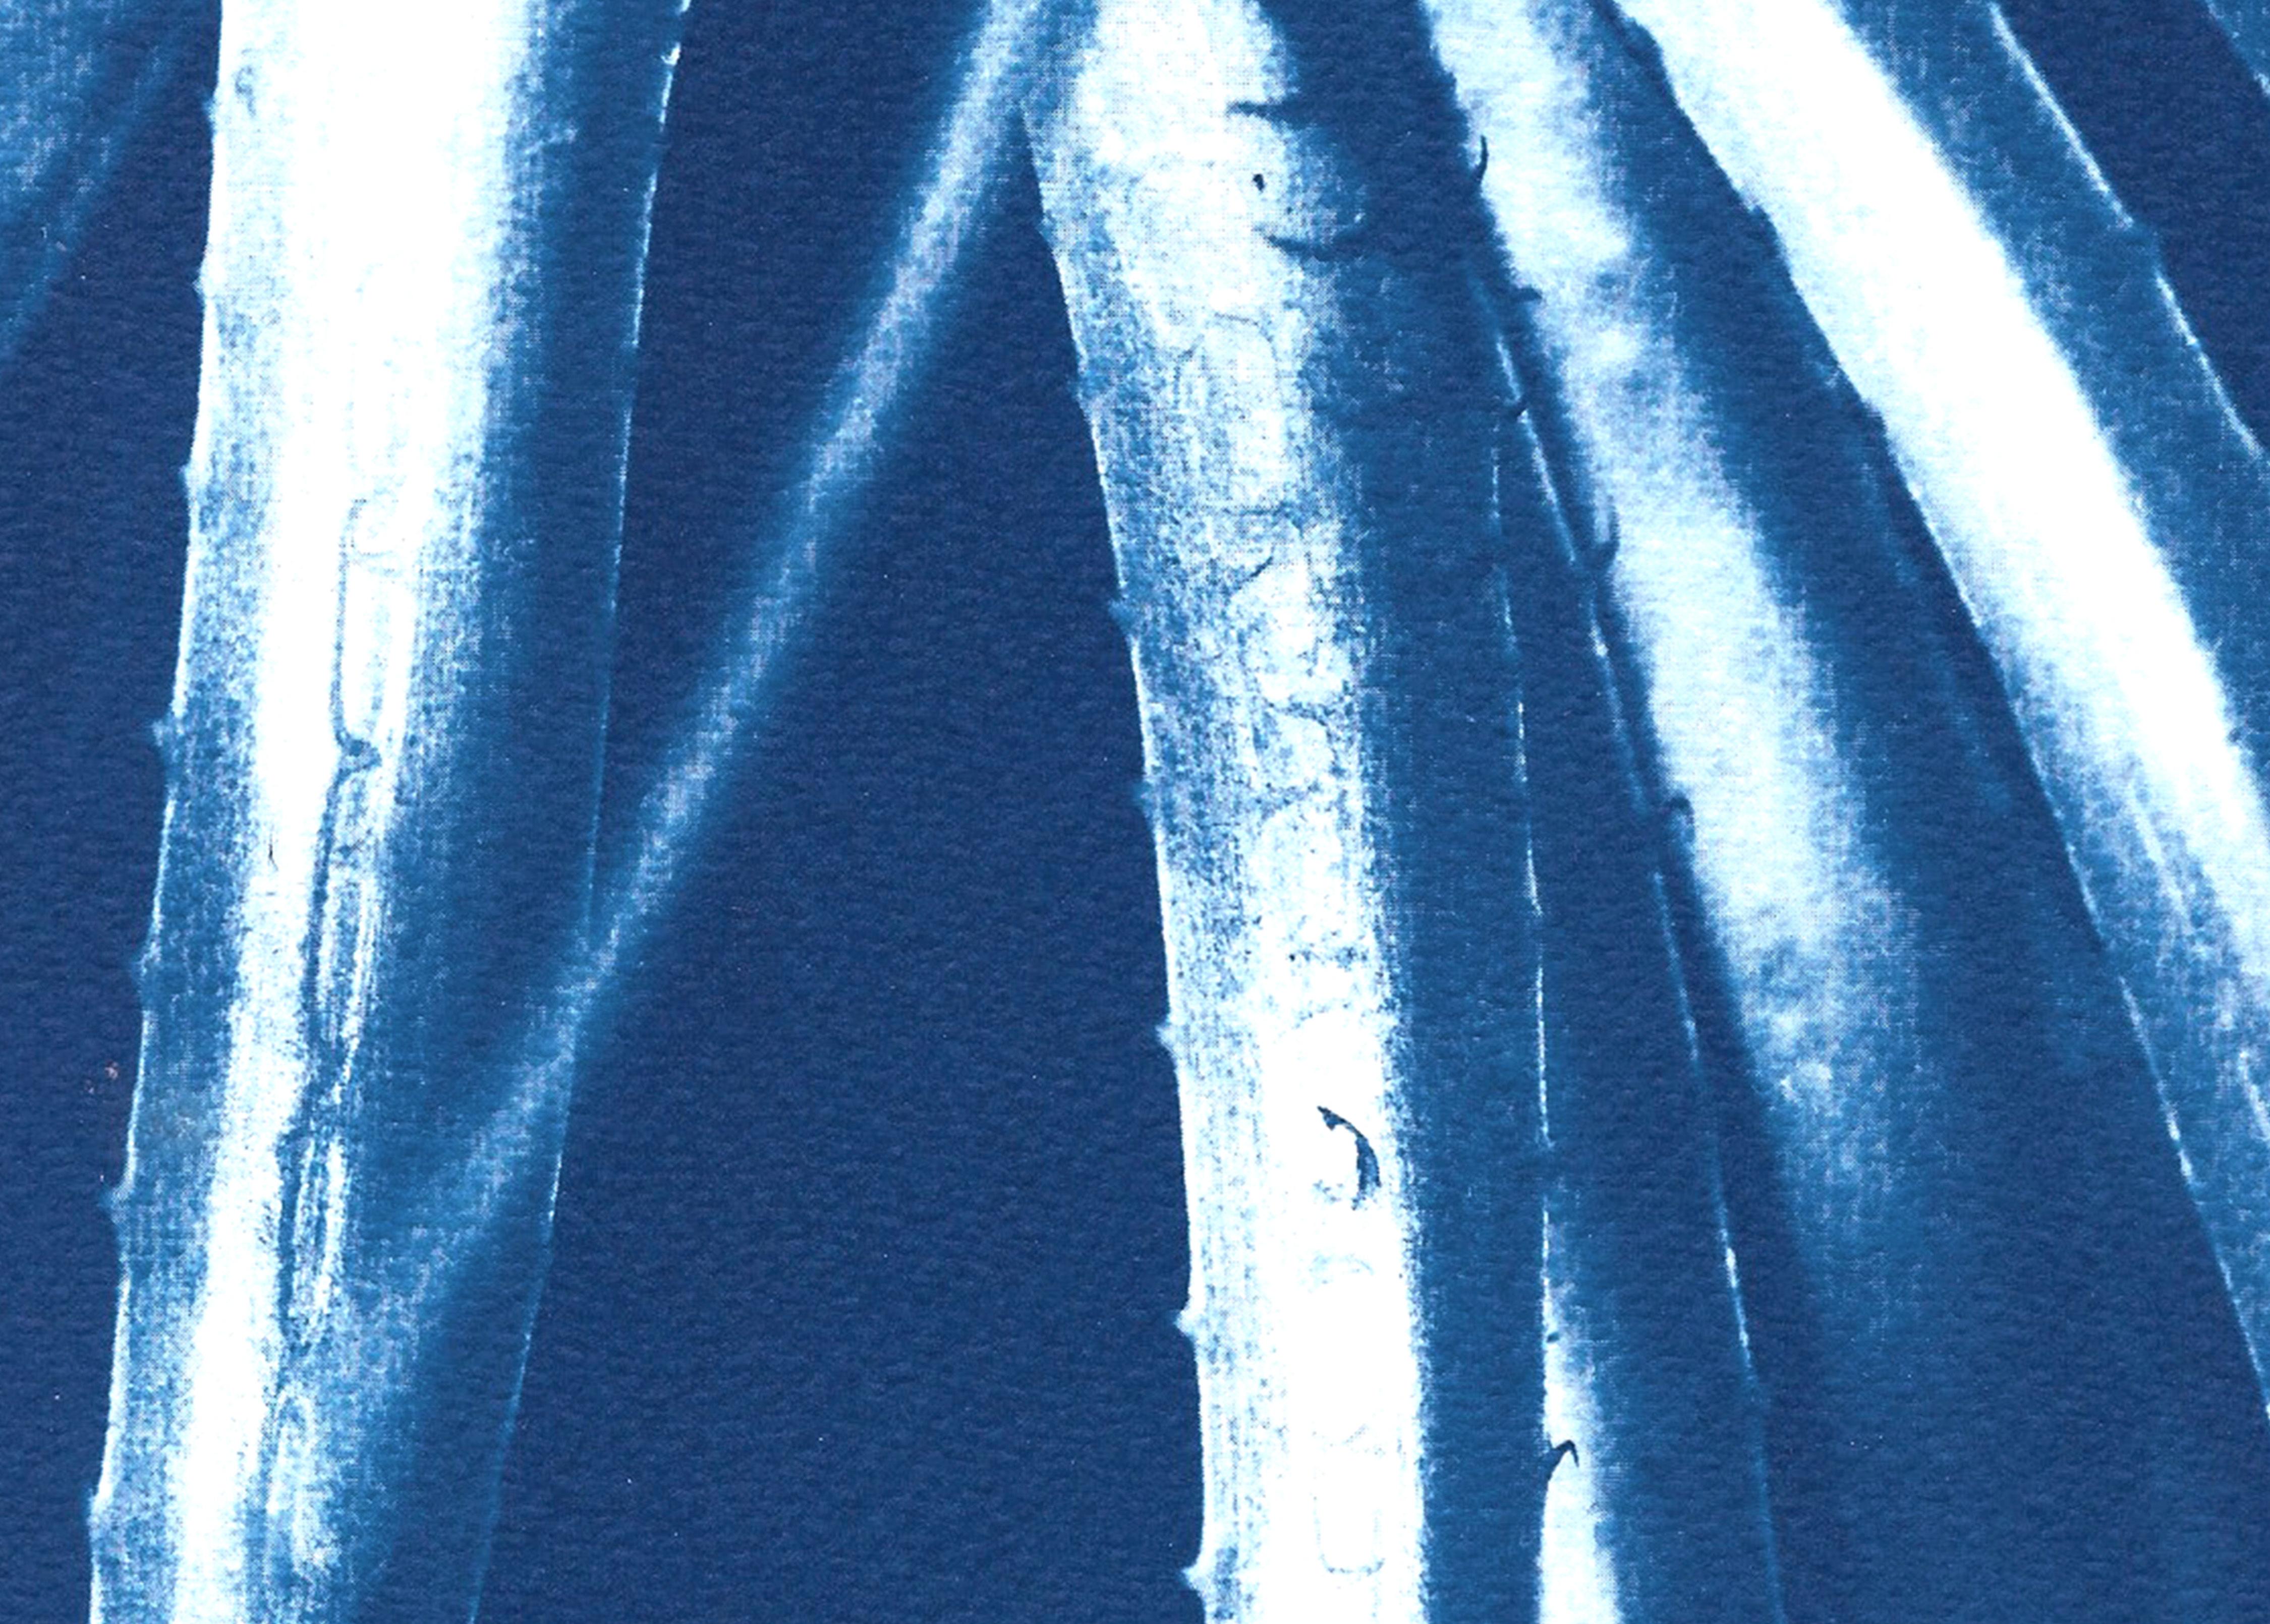 Il s'agit d'un cyanotype exclusif imprimé à la main en édition limitée d'une belle plante Aloe.

Détails :
+ Titre : Feuilles d'aloès du Jurassique
+ Année : 2022
+ Taille de l'édition : 100
+ Tampon et certificat d'authenticité fournis.
+ Mesures :